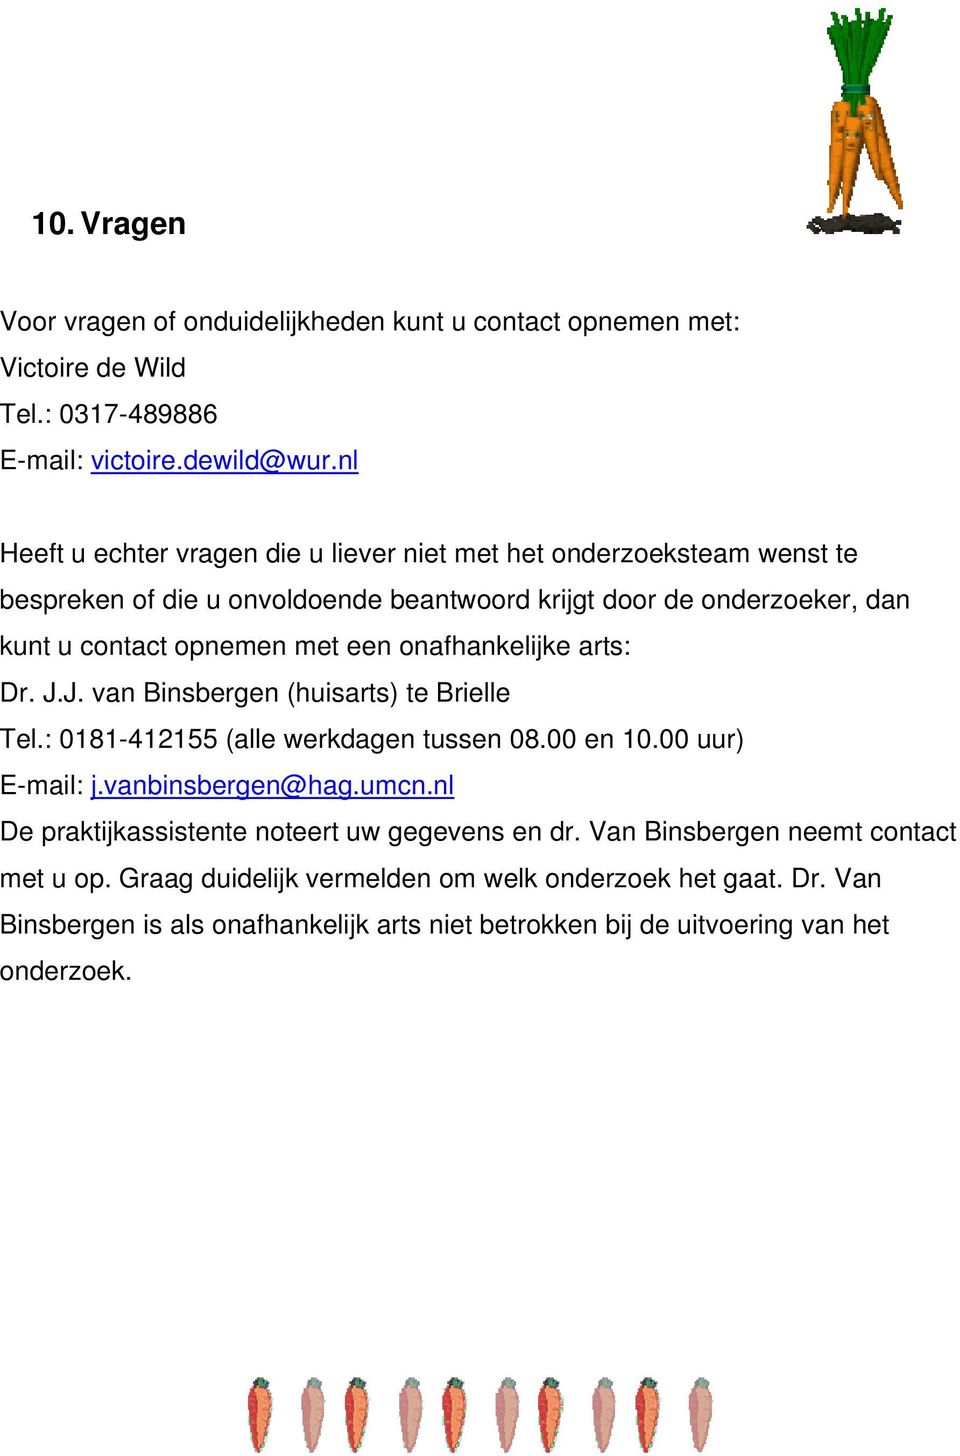 een onafhankelijke arts: Dr. J.J. van Binsbergen (huisarts) te Brielle Tel.: 0181-412155 (alle werkdagen tussen 08.00 en 10.00 uur) E-mail: j.vanbinsbergen@hag.umcn.